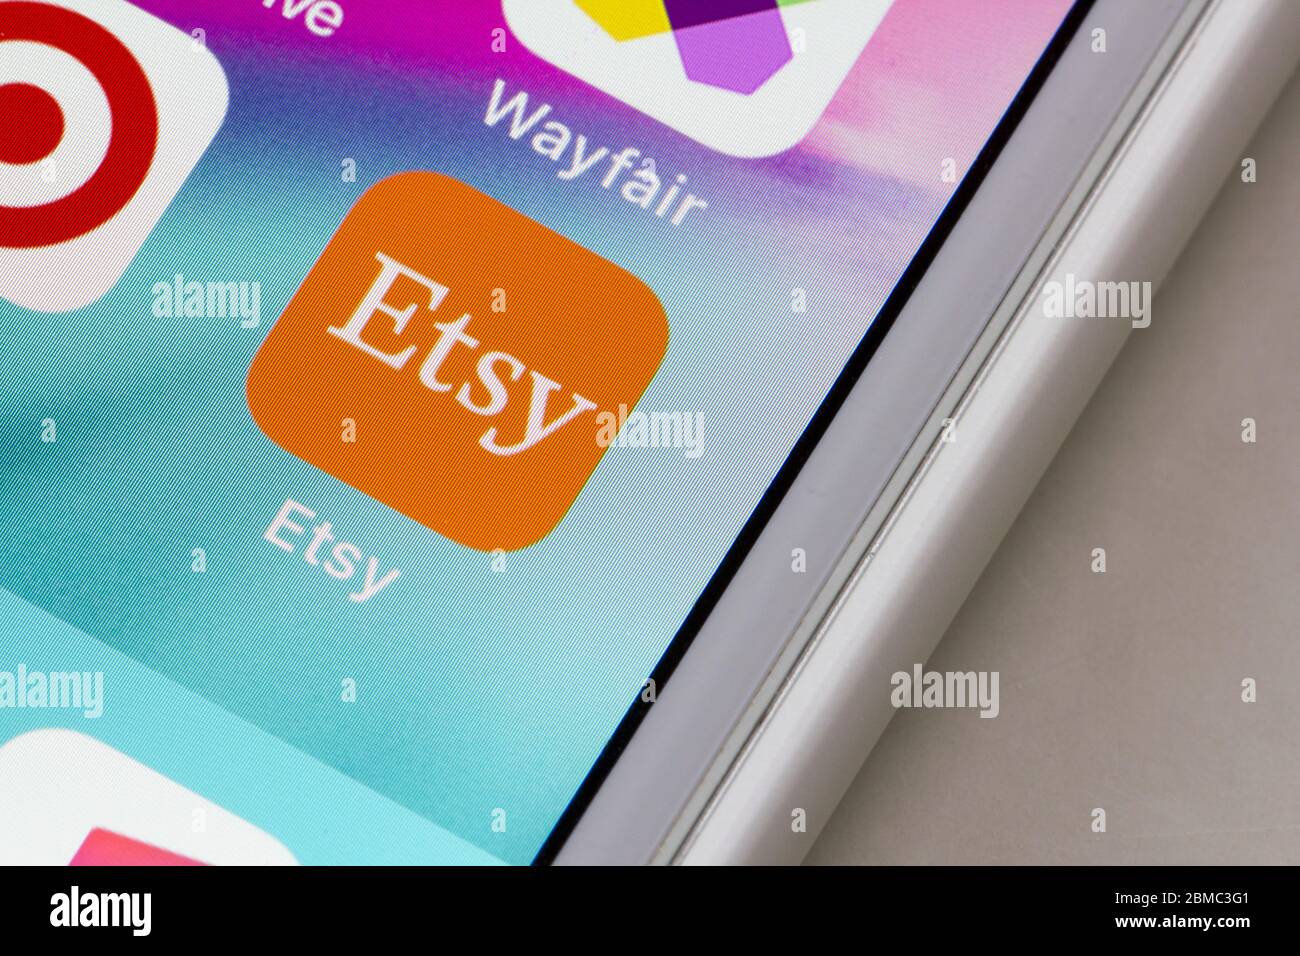 L'icône de l'application mobile Etsy apparaît sur un iPhone. Etsy est un site Web américain de commerce électronique axé sur les articles faits à la main ou vintage et les fournitures artisanales. Banque D'Images